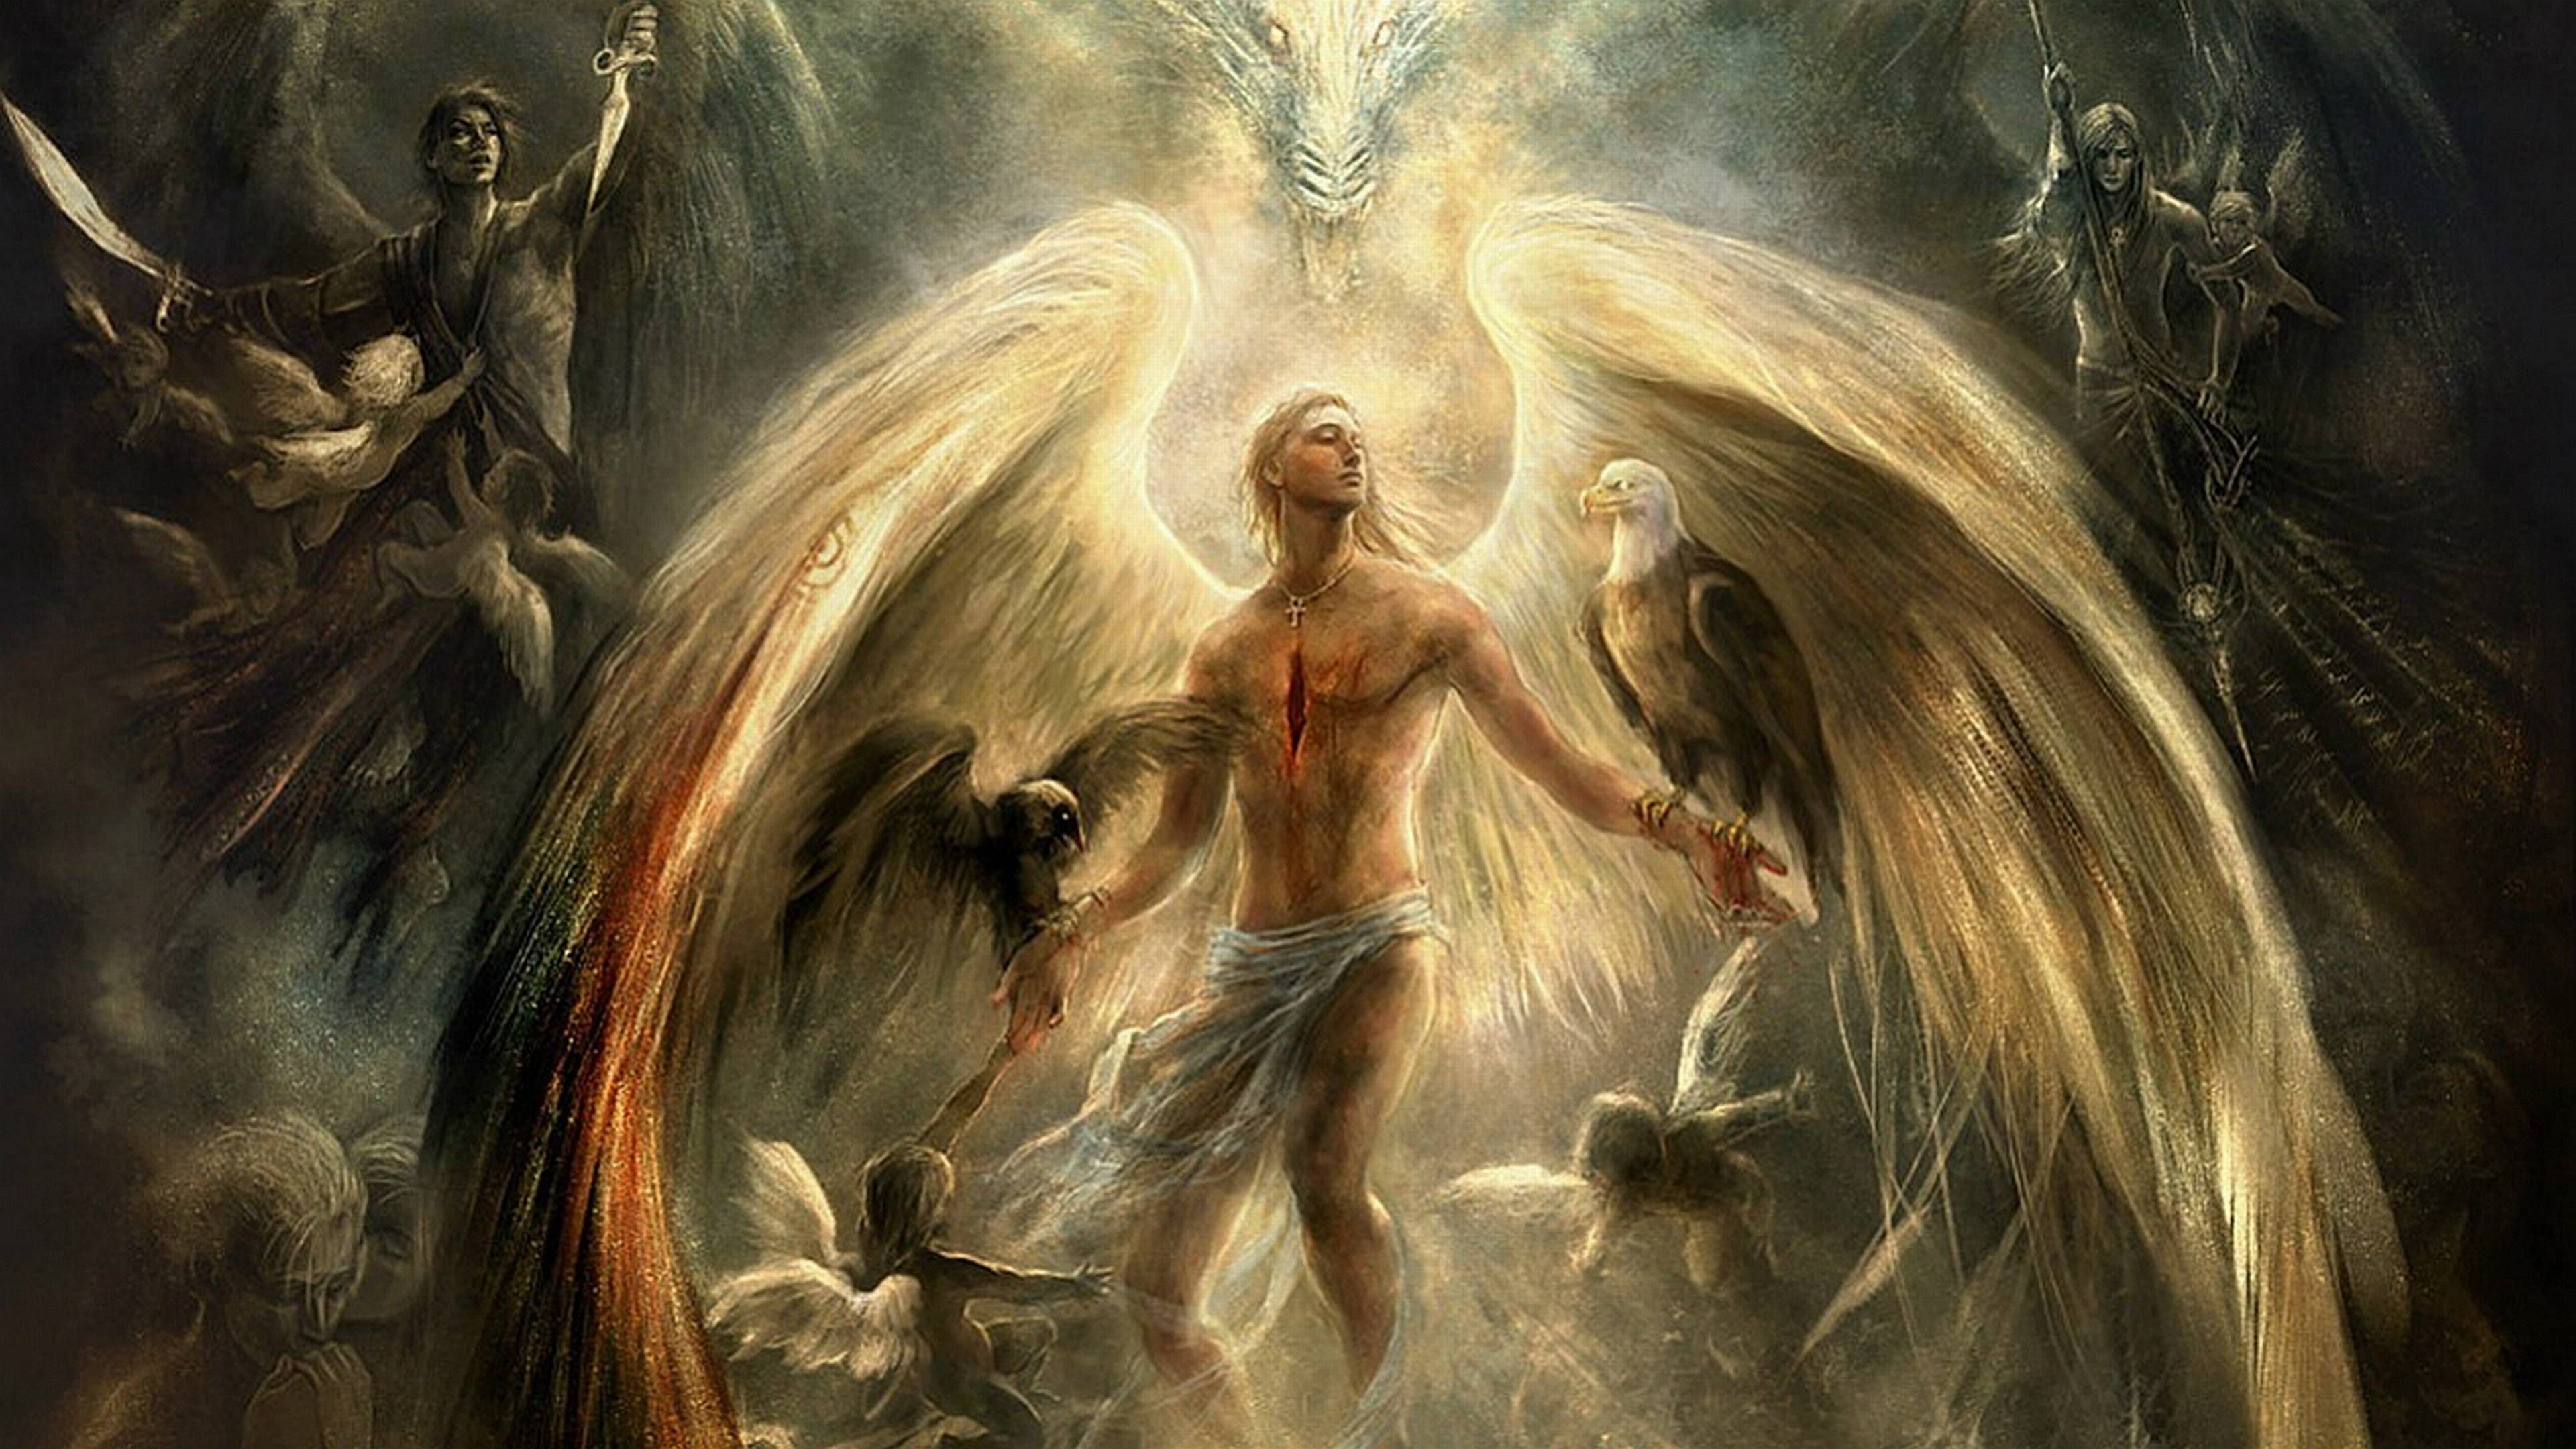 Hãy nhìn vào bức ảnh của Thiên thần và cảm nhận vẻ đẹp tuyệt vời của nó. Với đôi cánh trắng tinh khiết, thiên thần đưa người ta đến với một thế giới mơ màng, nơi chỉ có sự thanh nhã và tình yêu thương.